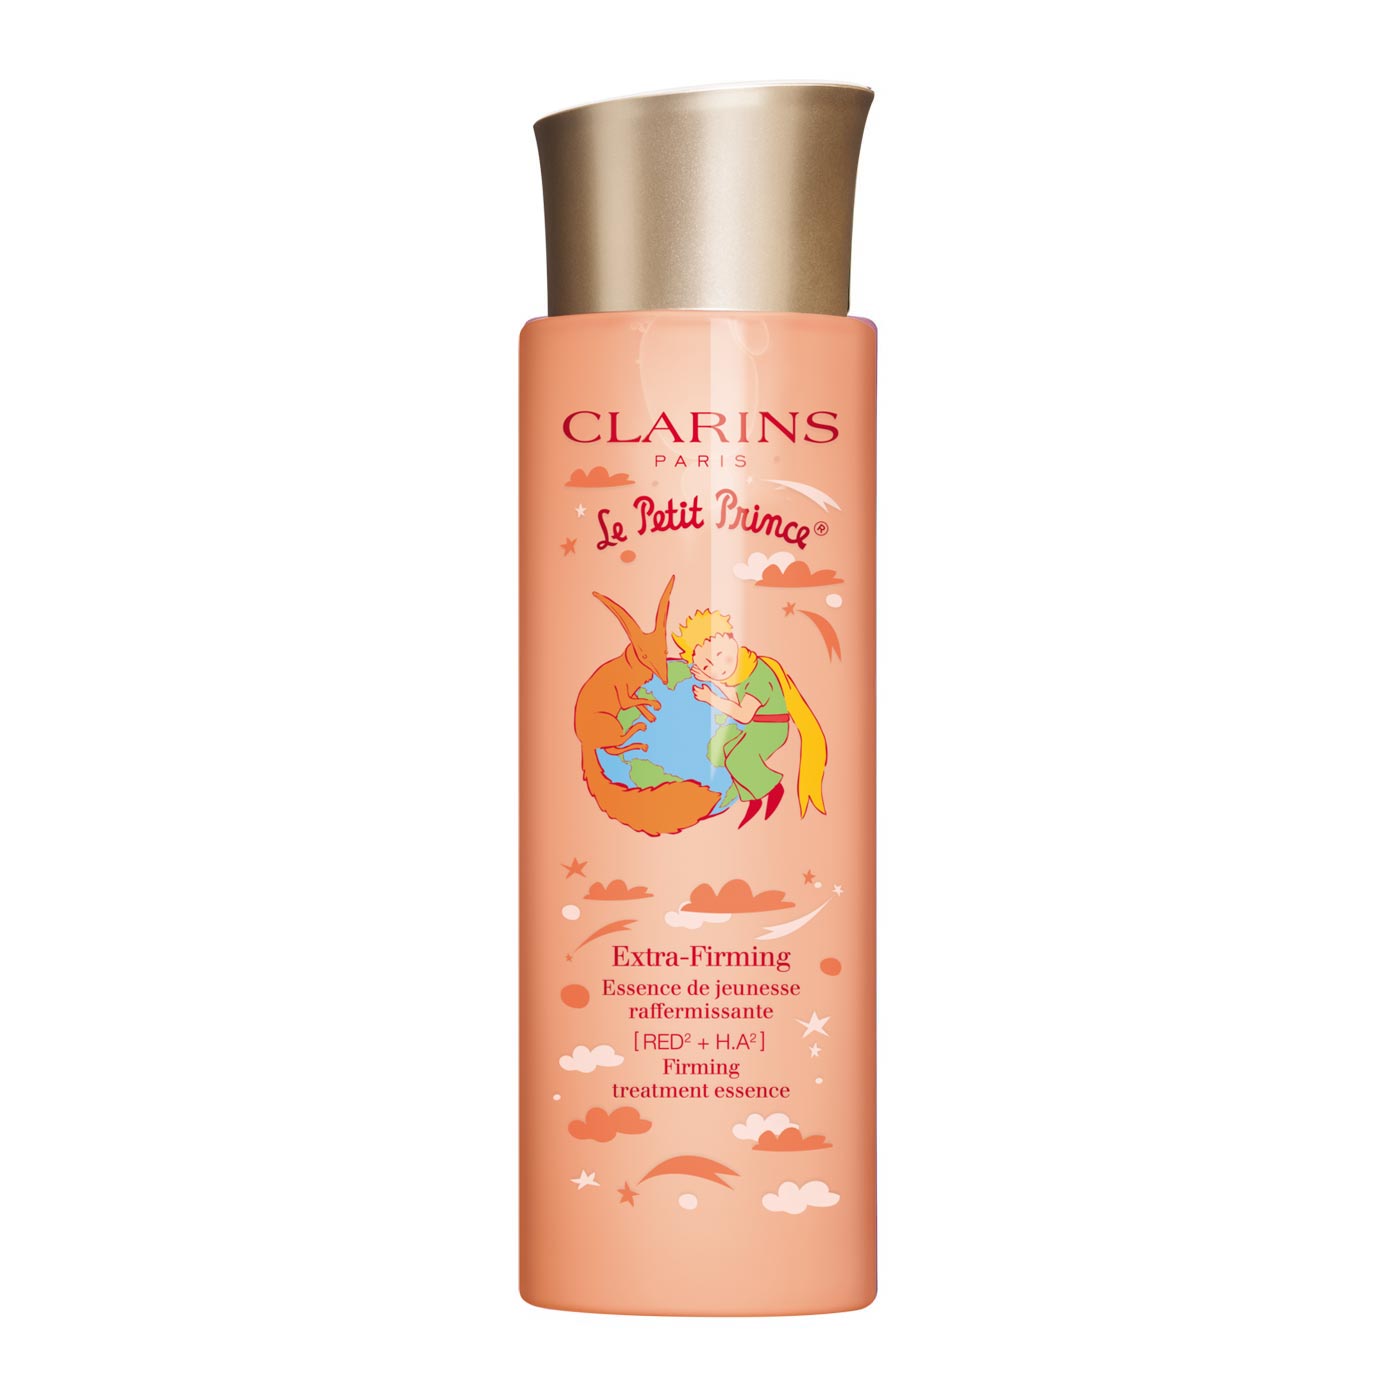 化粧水・ローション - スキンケア - 公式通販サイト | CLARINS®